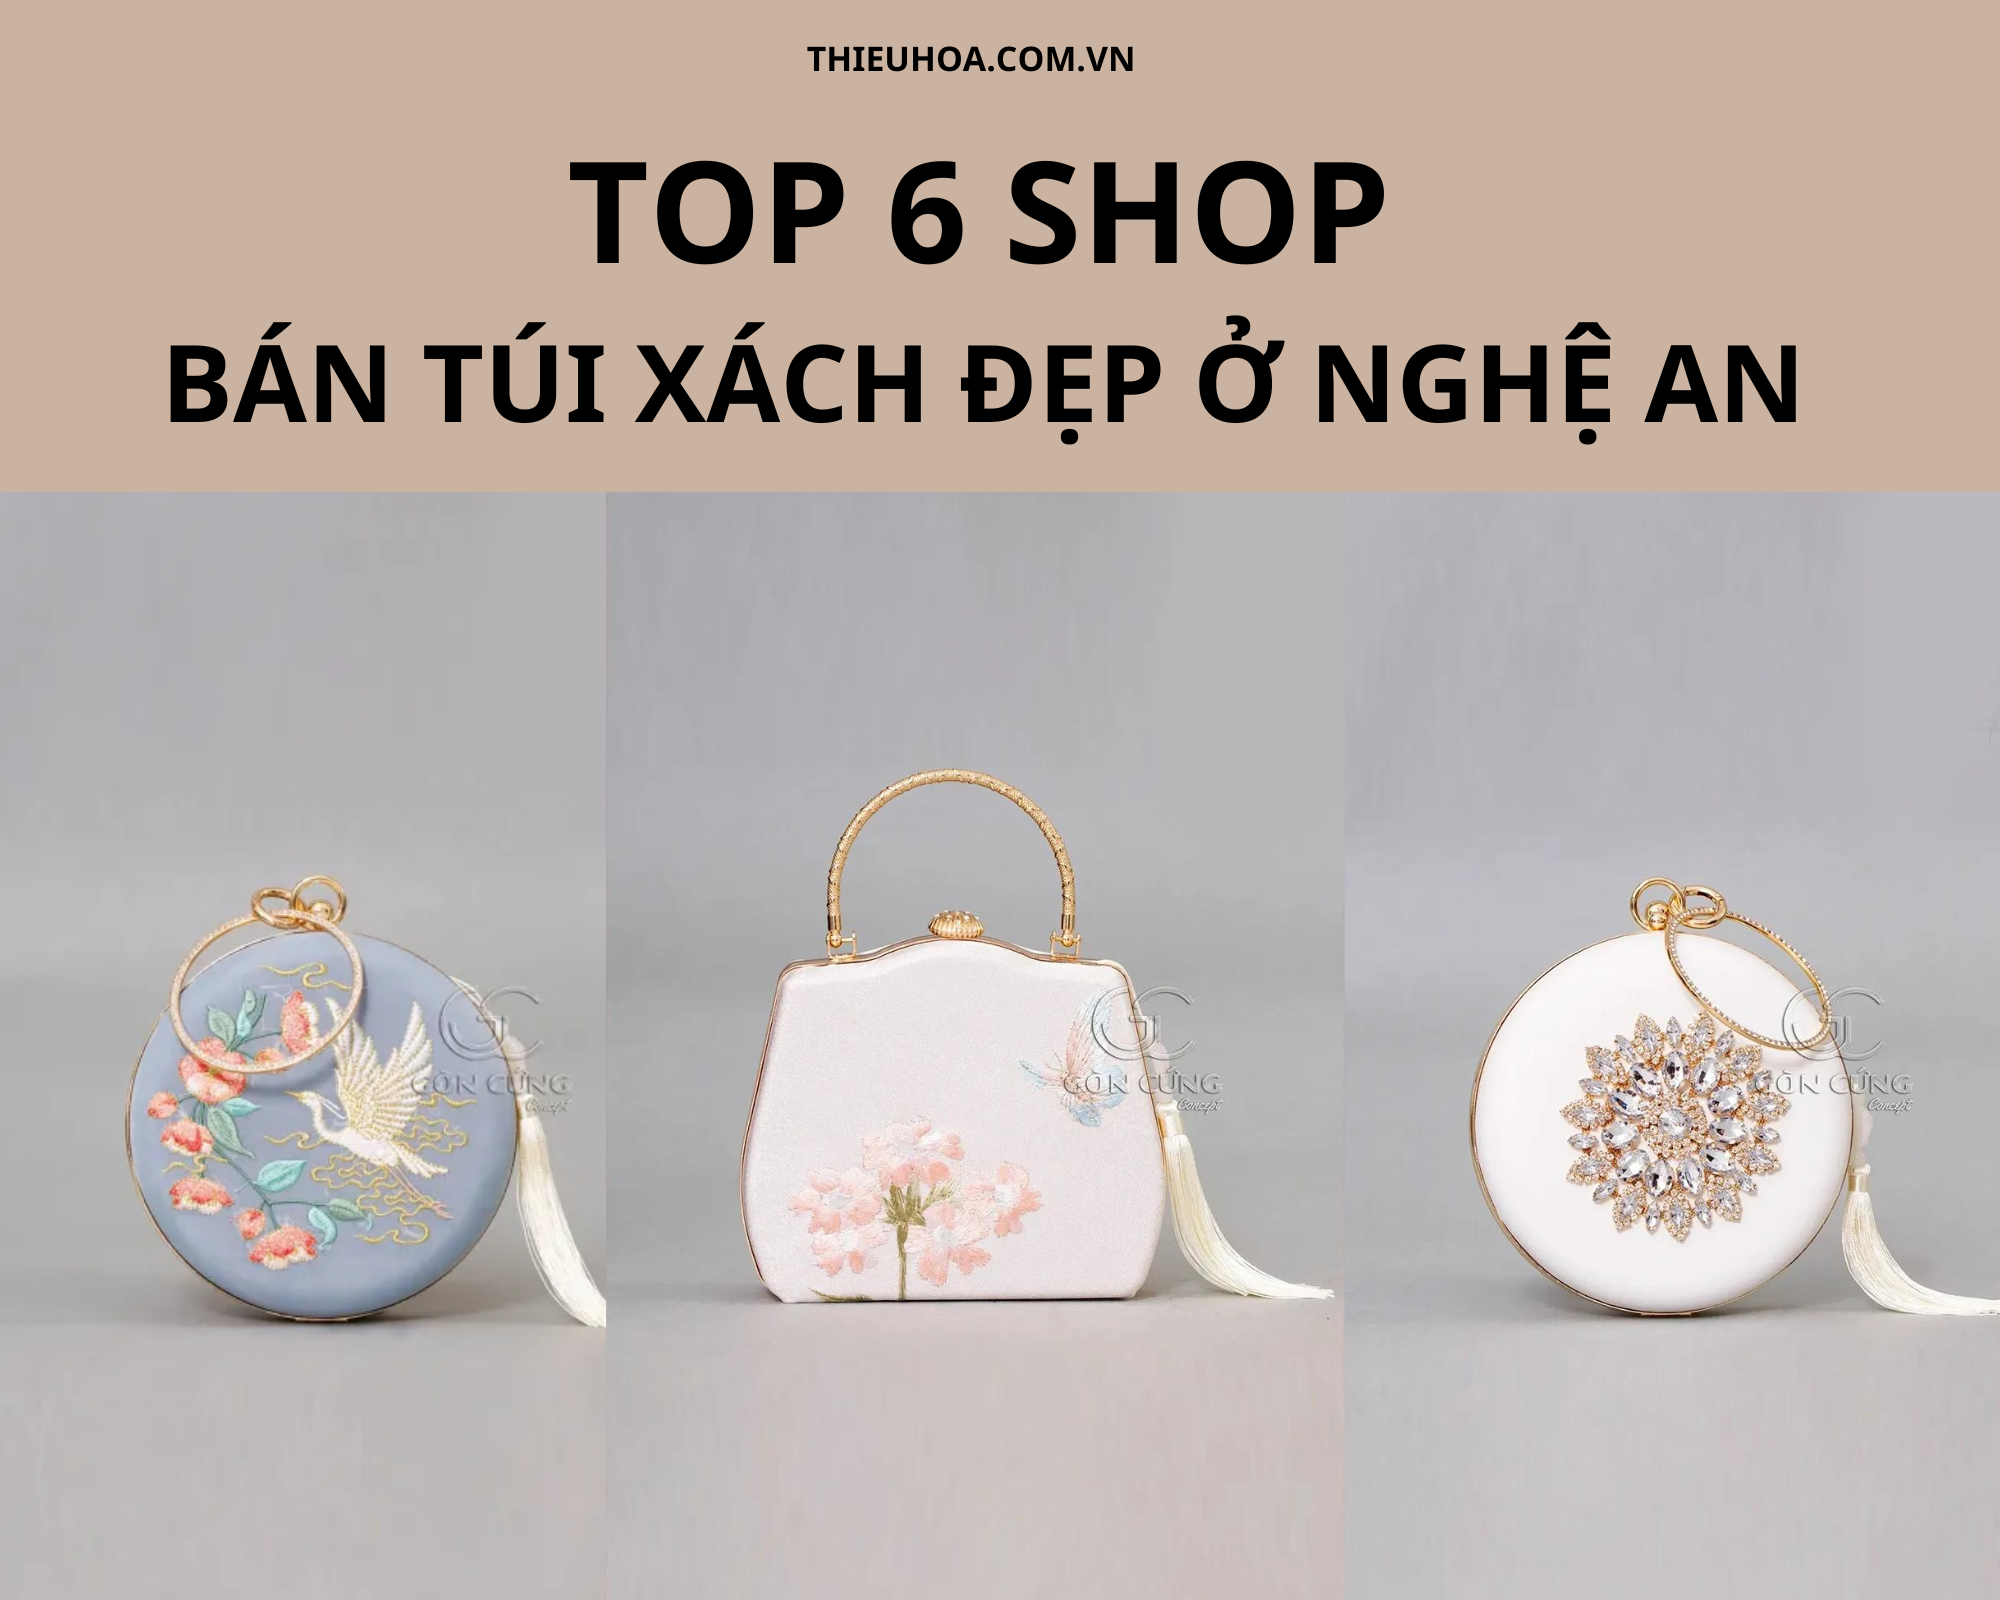 Top 6 shop bán túi xách đẹp ở Nghệ An rẻ và chất lượng